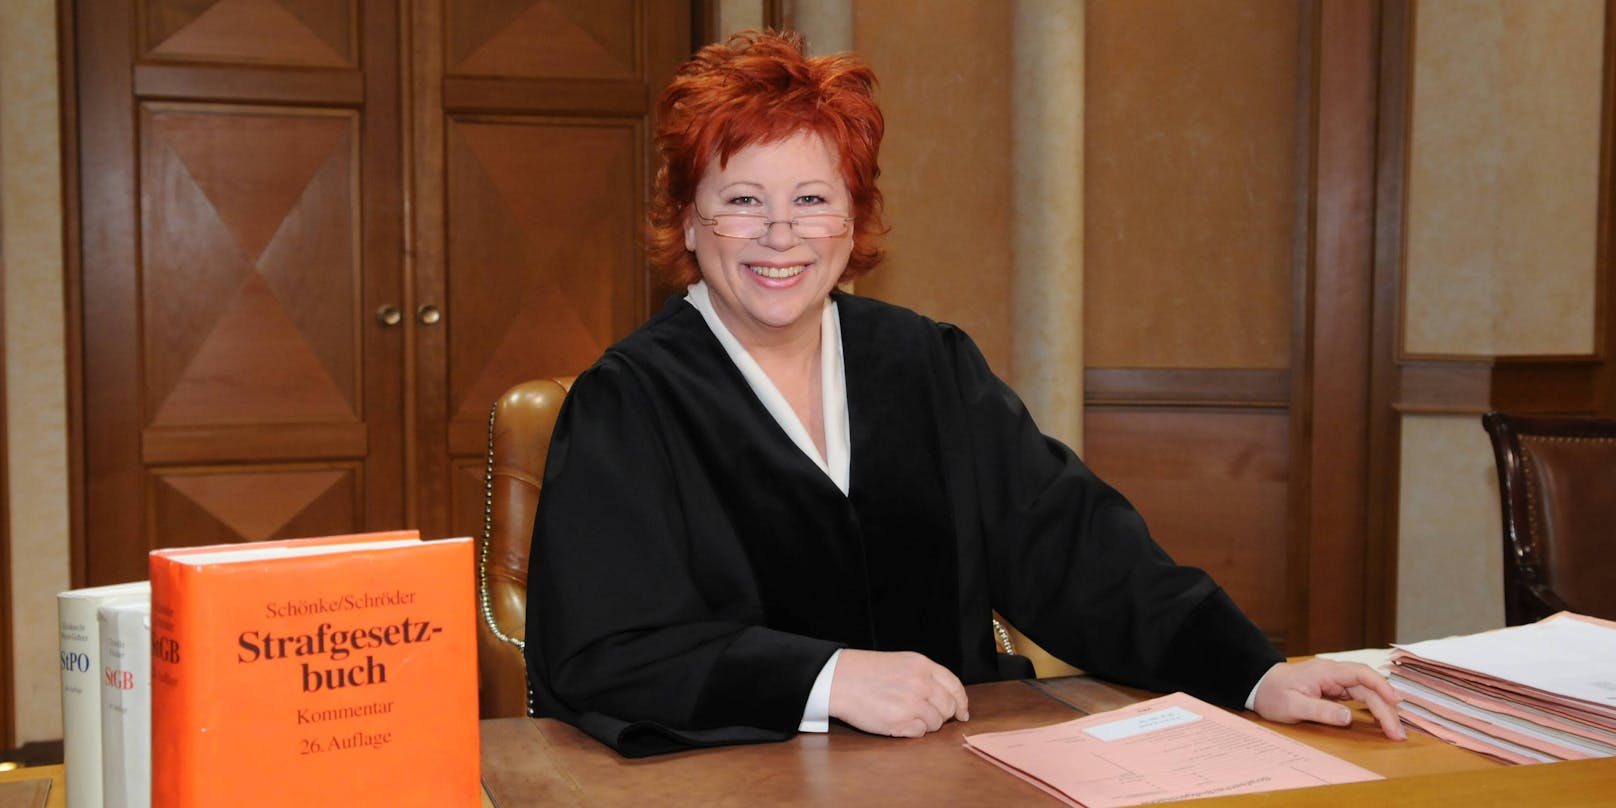 Barbara Salesch erlangte Bekanntheit durch ihre pseudo-dokumentarische Gerichtsshow "Richterin Barbara Salesch".